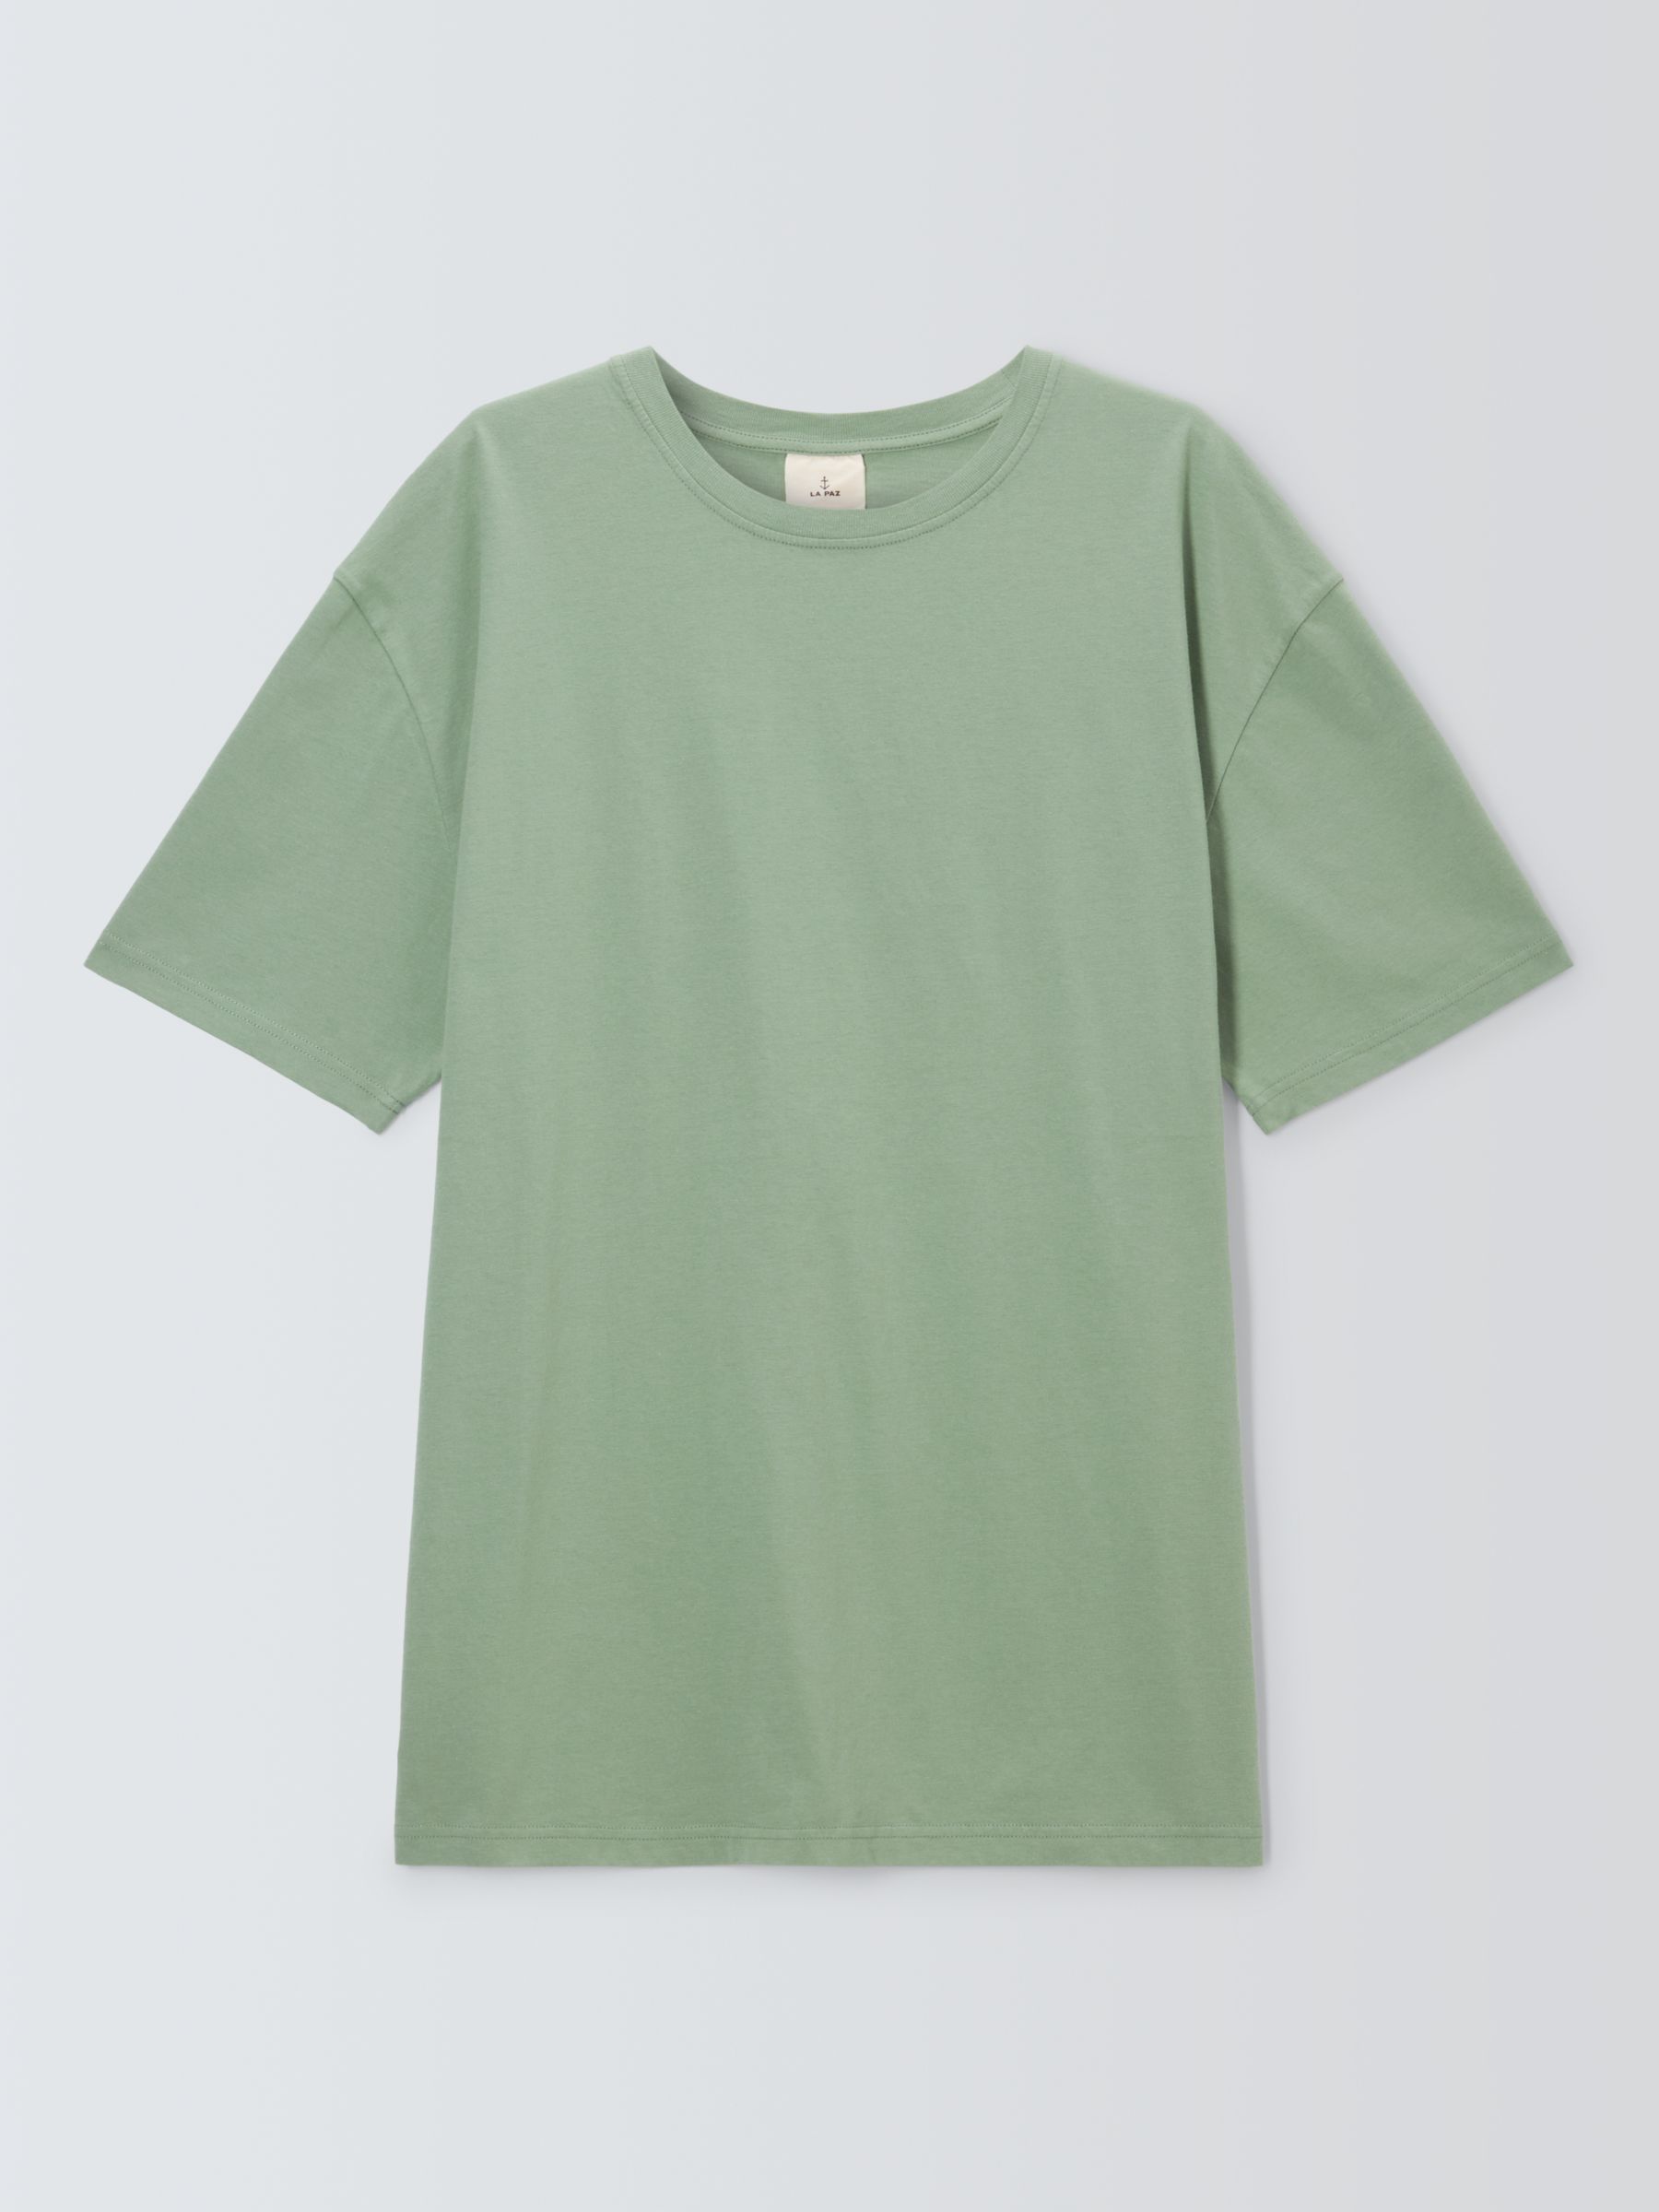 La Paz Cotton T-Shirt, Green Bay, XL